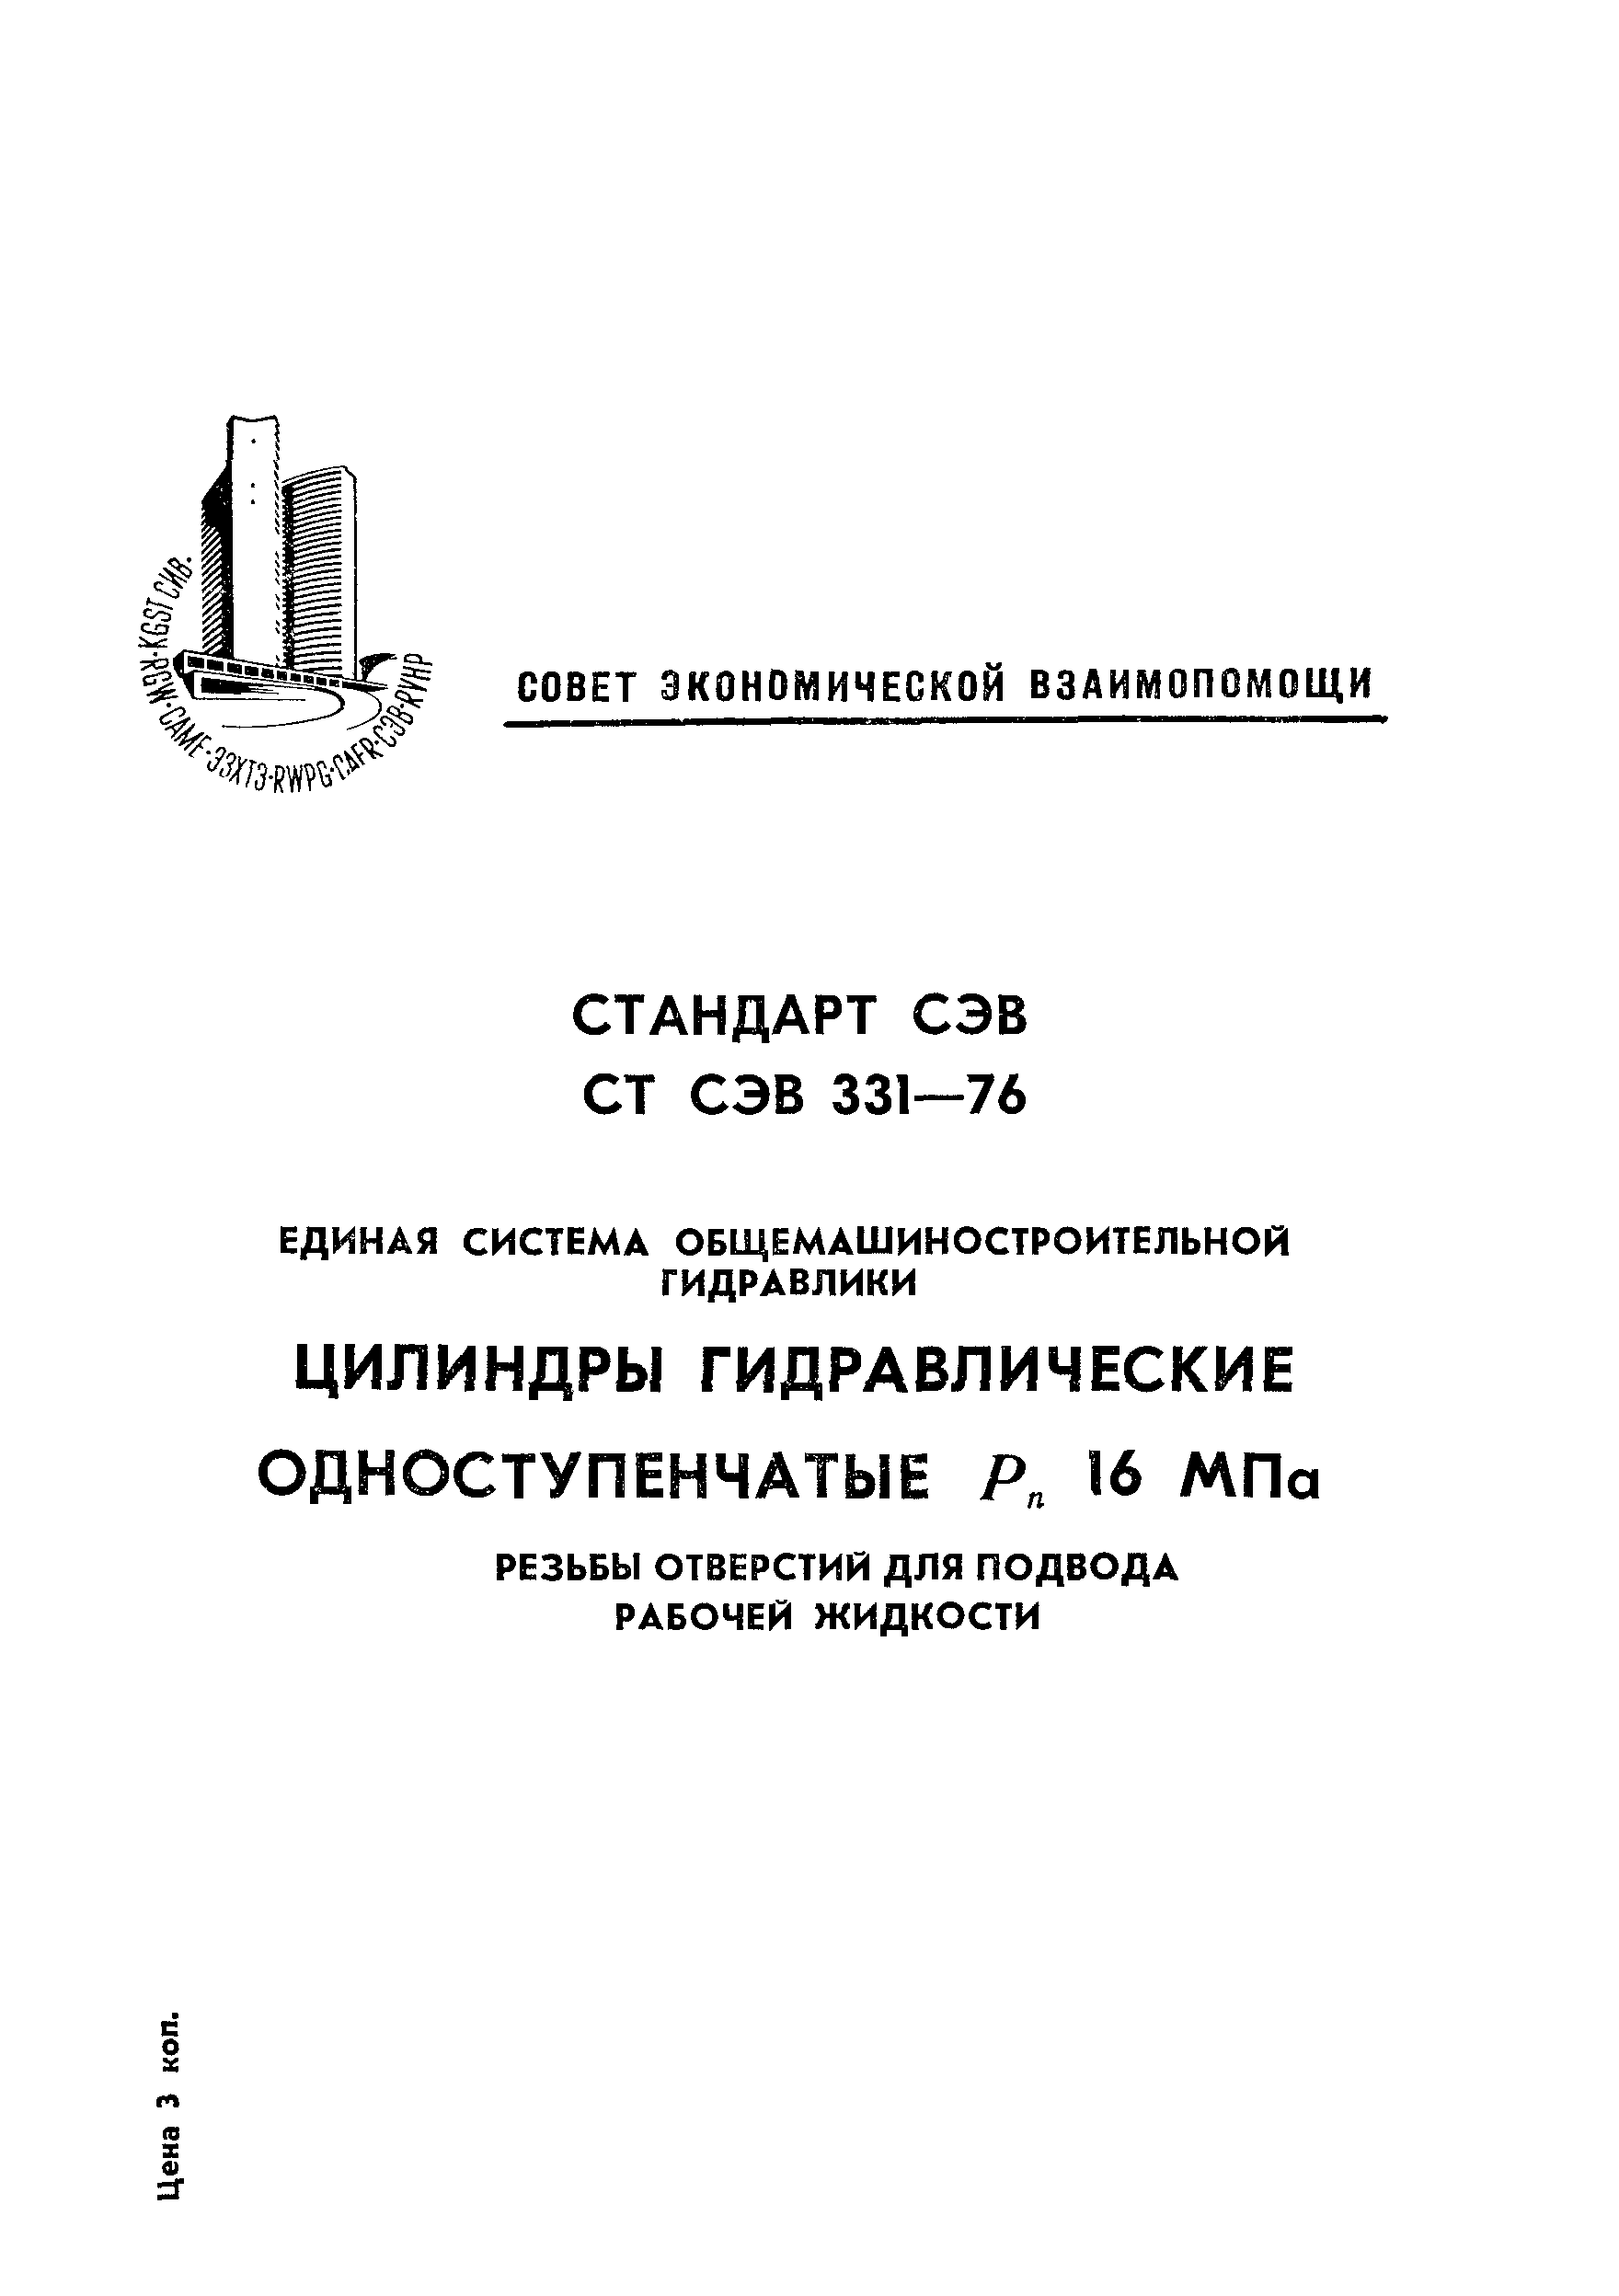 СТ СЭВ 331-76